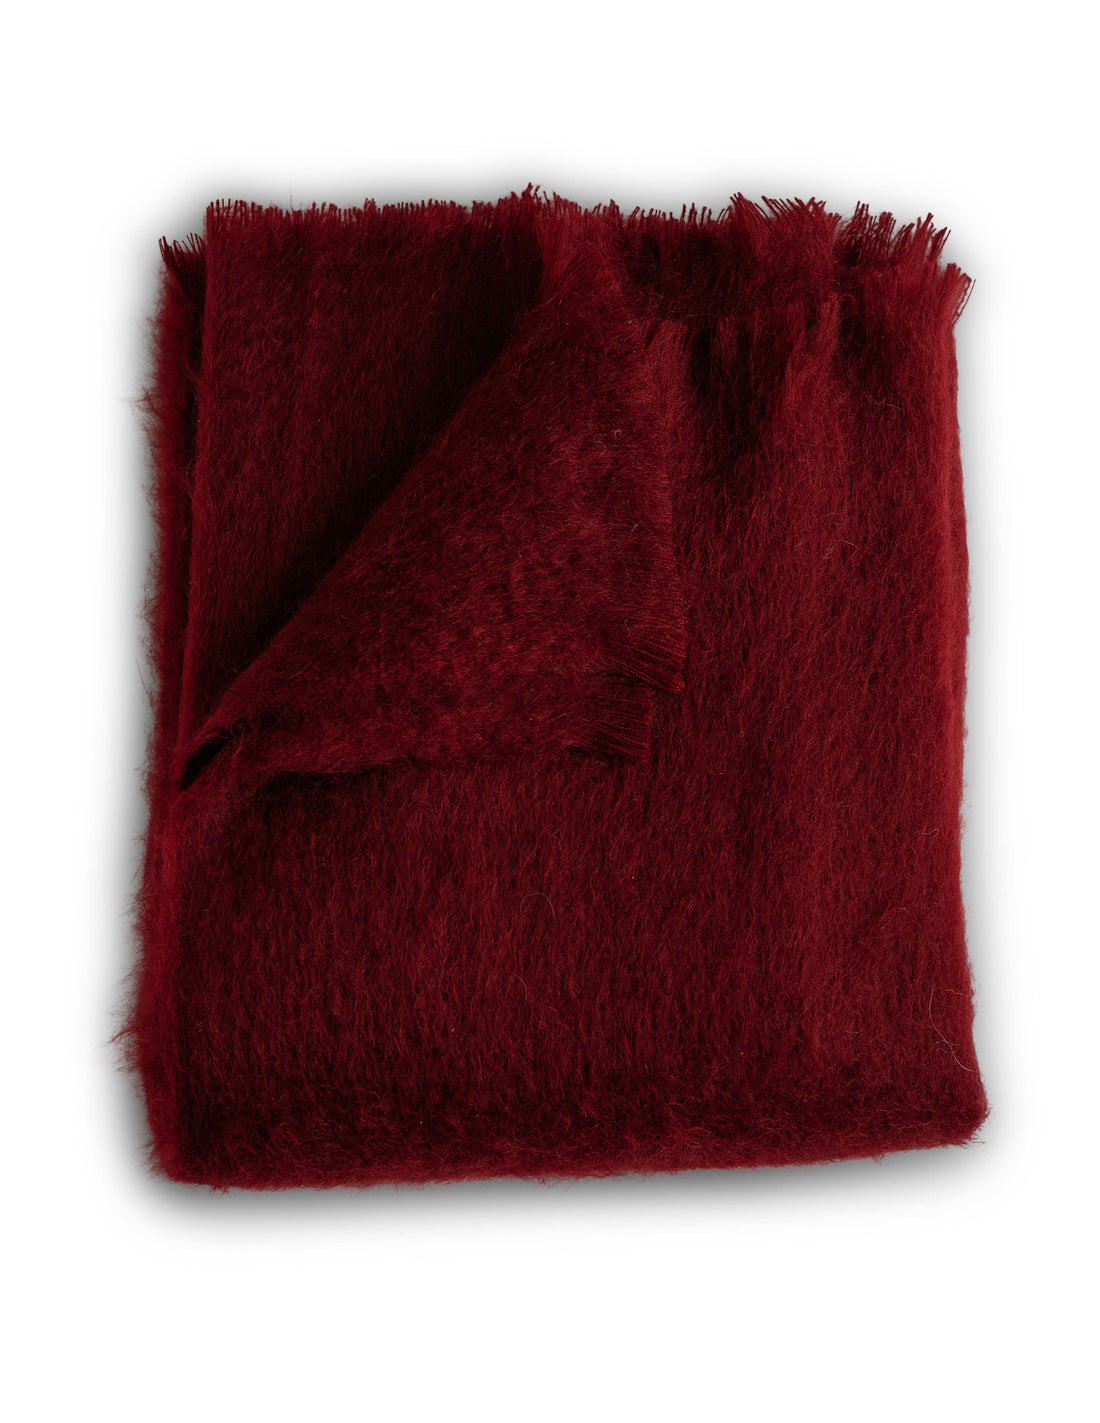 Folded garnet red mohair throw blanket